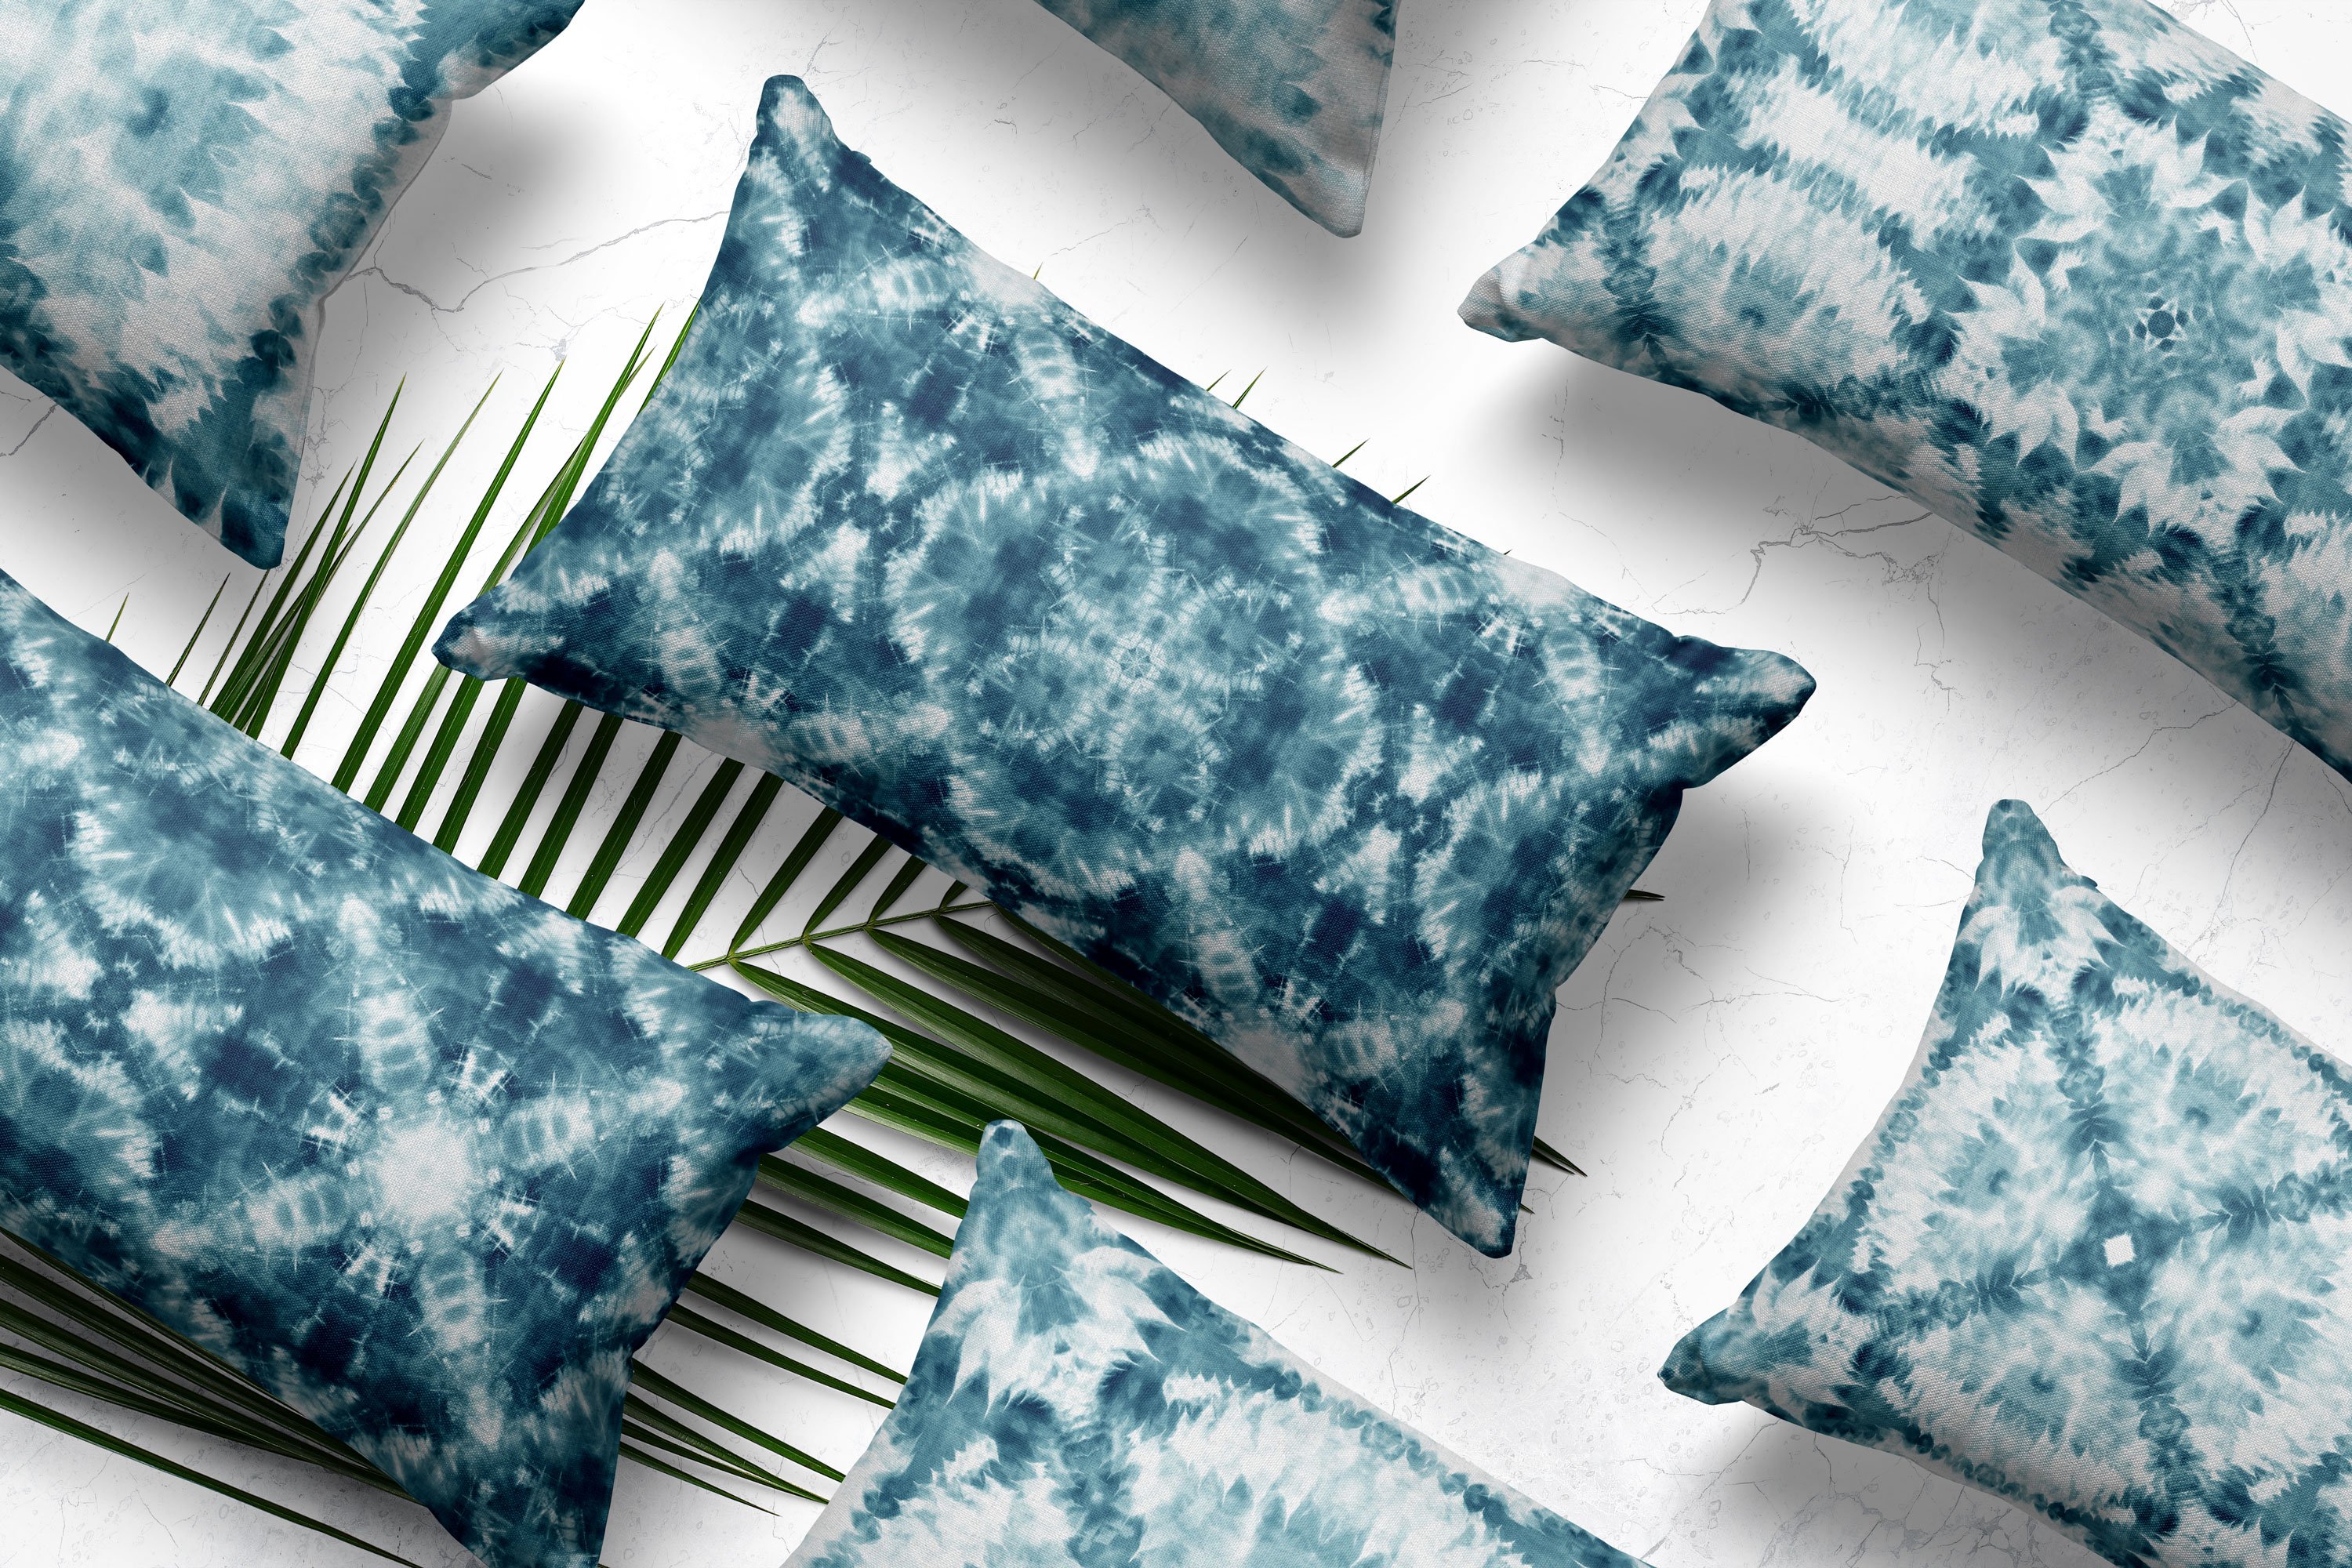 shibori pillows patterns 258